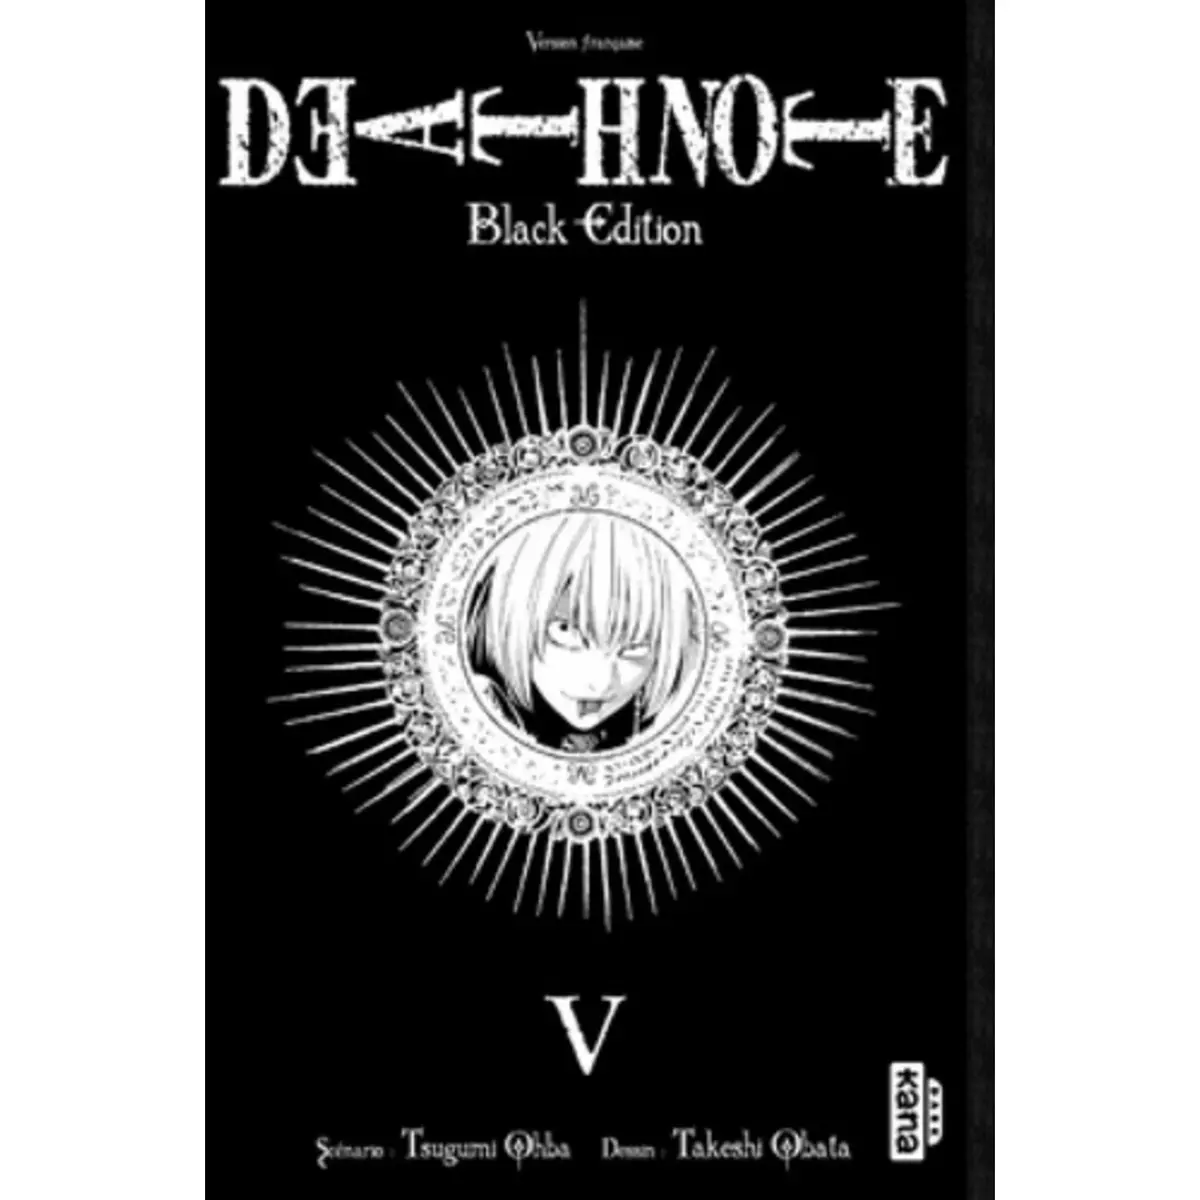  DEATH NOTE TOME 5 : BLACK EDITION, Ohba Tsugumi